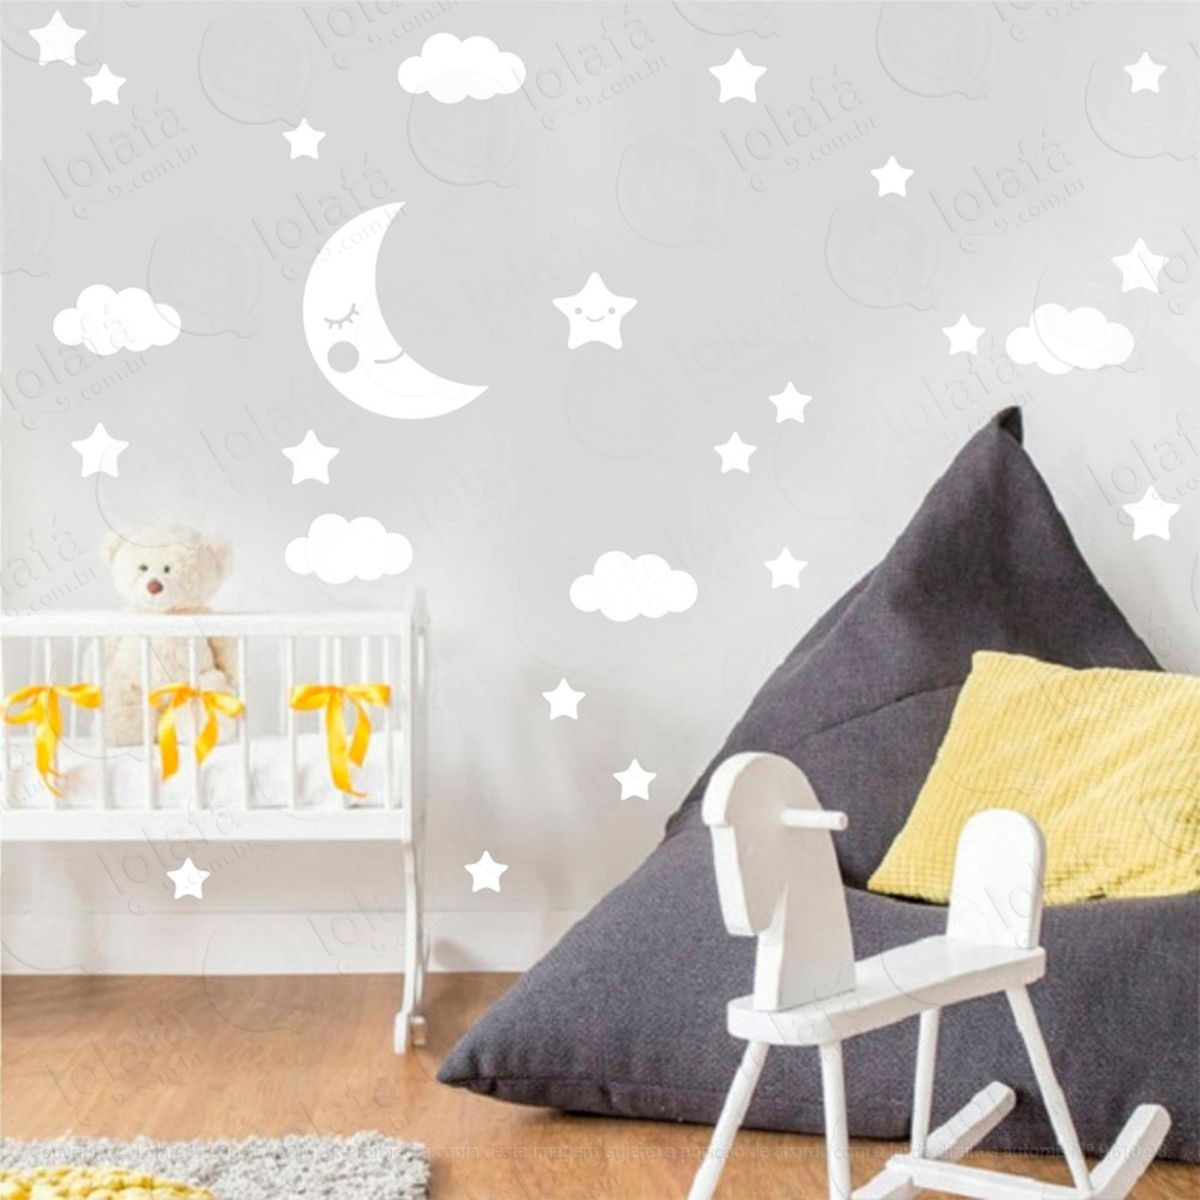 adesivos nuvens e estrelas 62 peças adesivos para quarto de bebê infantil - mod:1035